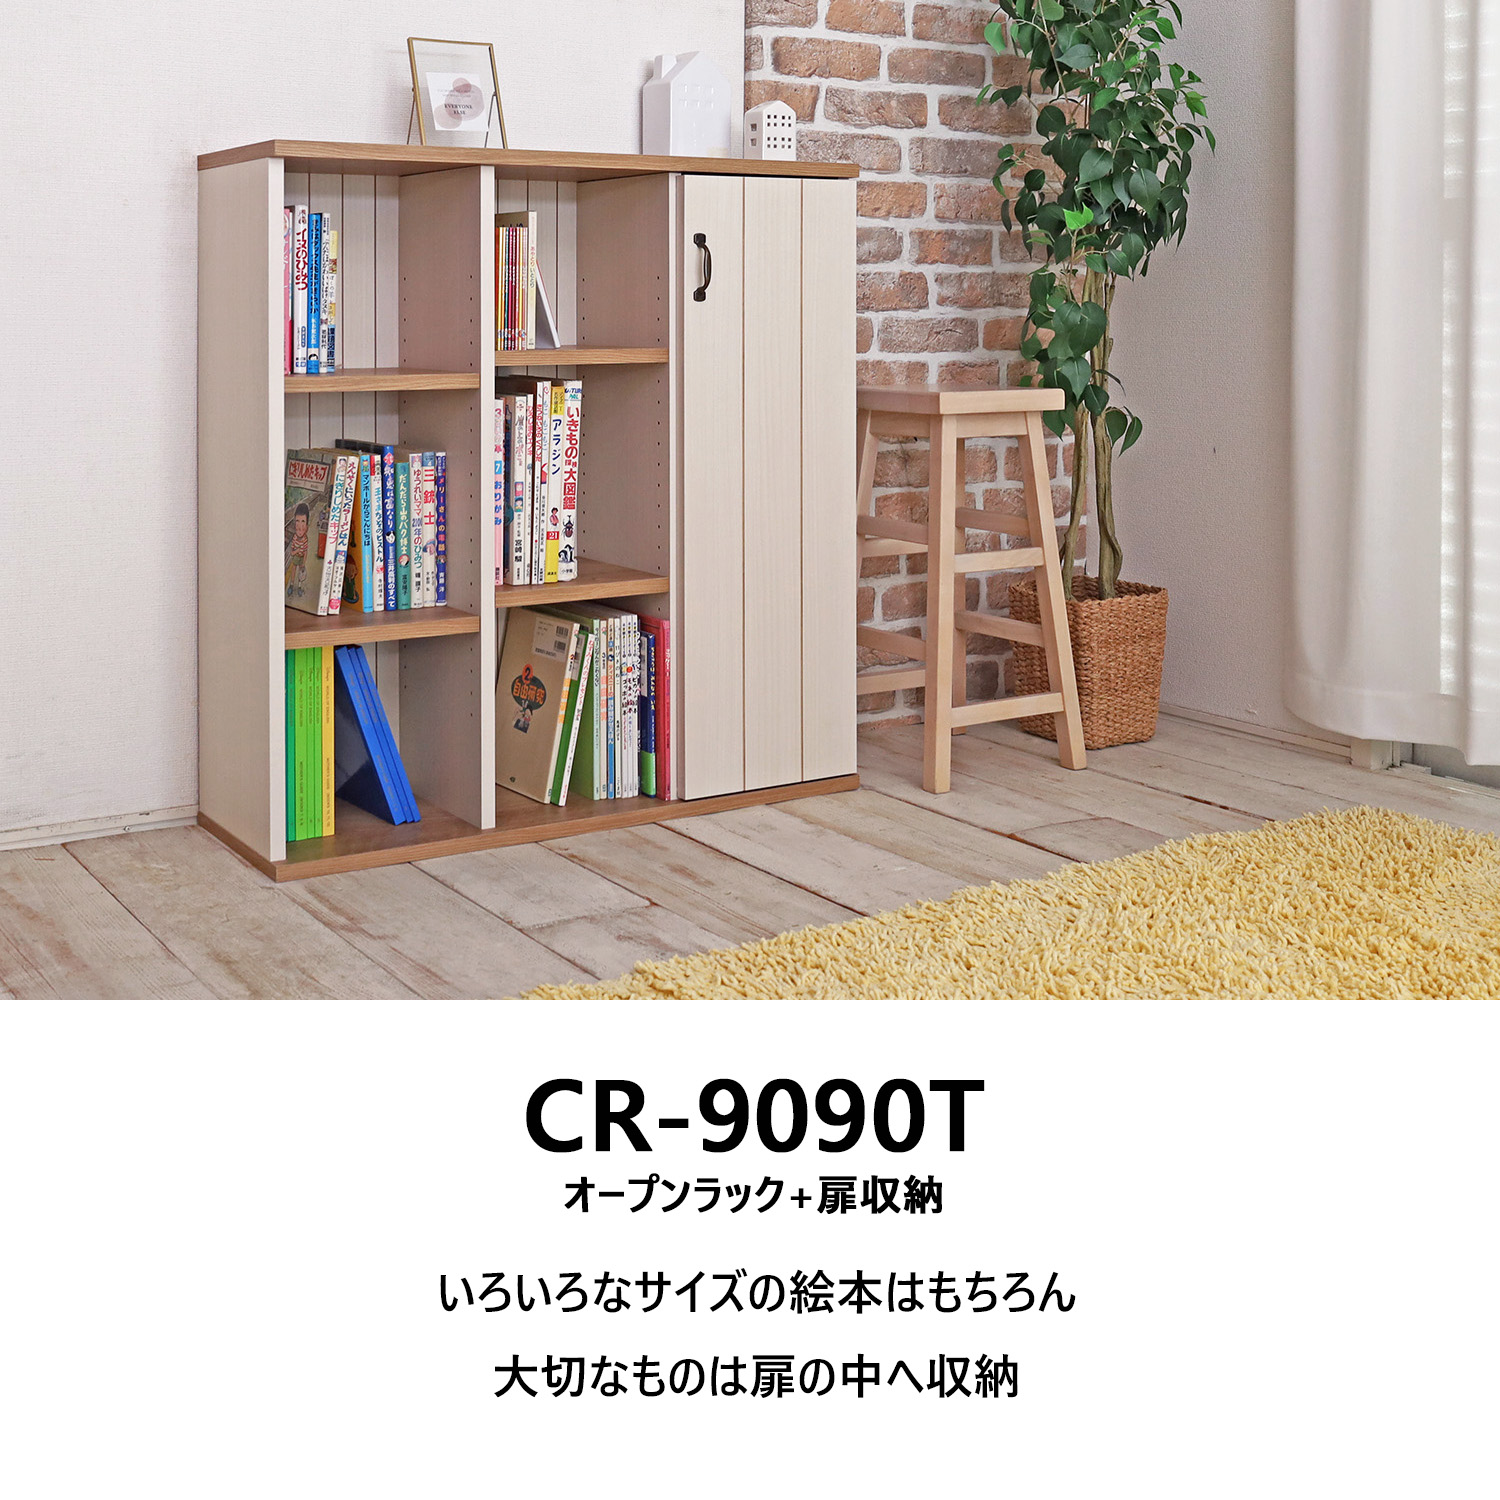 本棚 扉付き フレンチカントリー 絵本棚 ラック コミック収納 小さい シェルフ 絵本 木製 幅約90 日本製 CR-9090T-WH